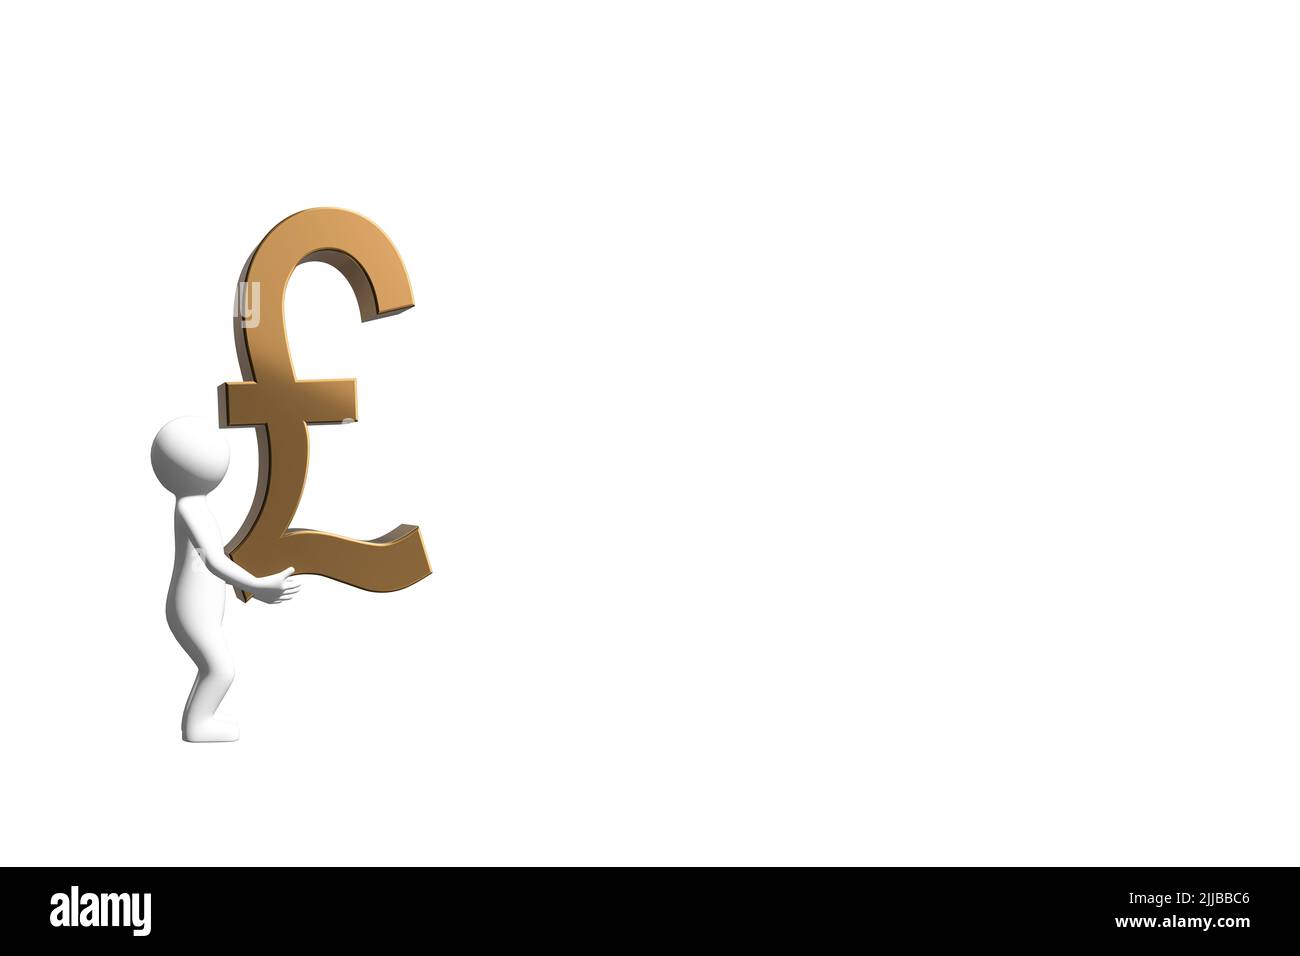 Homme portant l'argent concept 3D figure portant un symbole de devise livre sterling 3D or métal découpé isolé sur fond blanc Banque D'Images